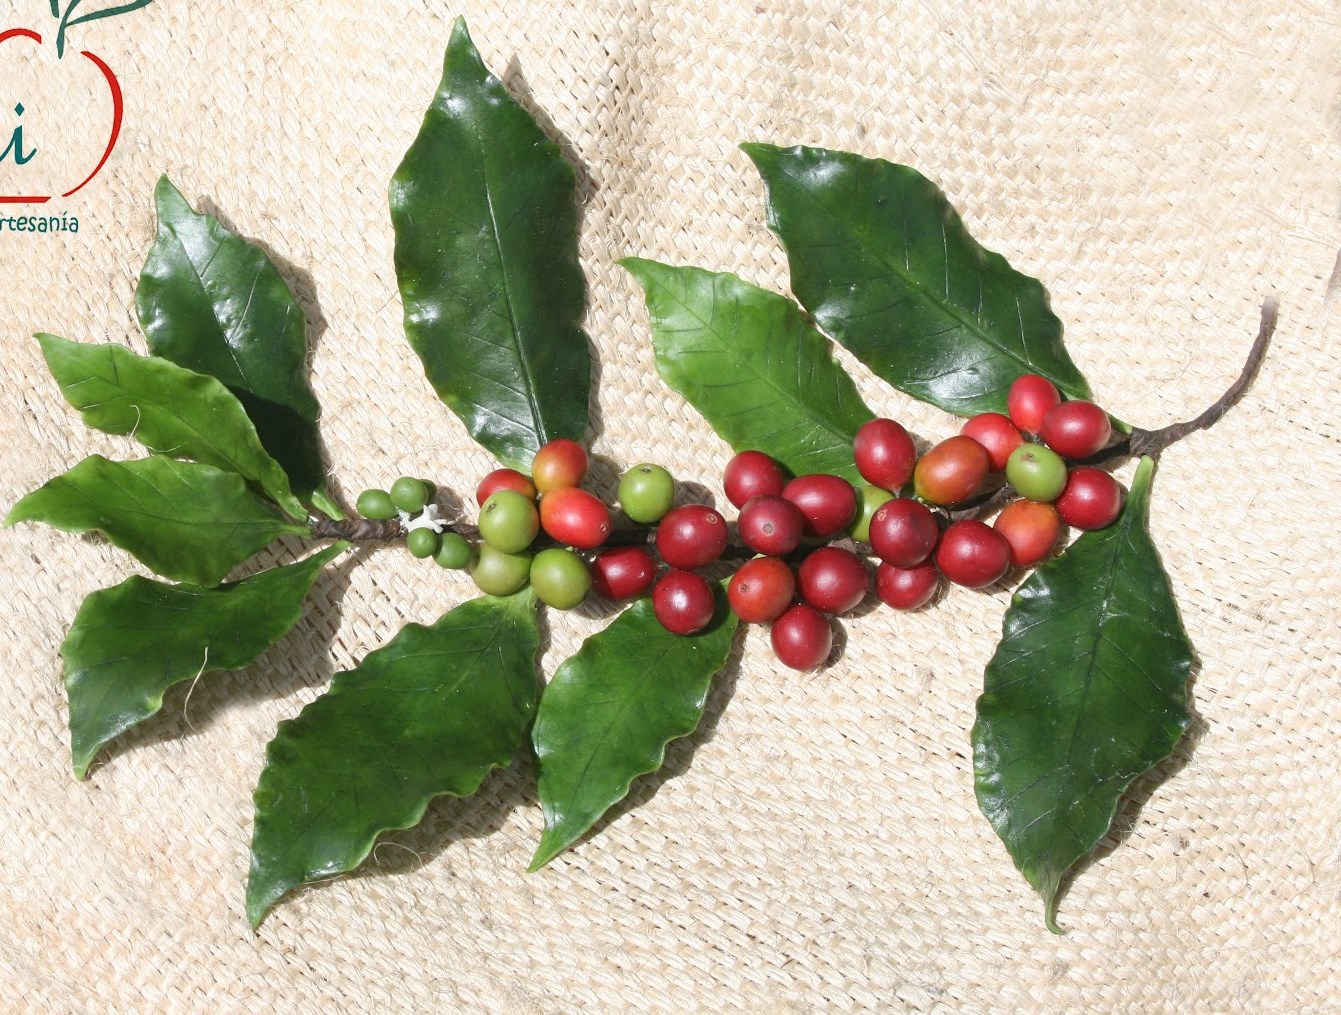 Originário da Etiópia, na África, o fruto do cafeeiro tornou-se popular no mundo e adaptou-se bem na região da Arábia, localizada naquele continente.